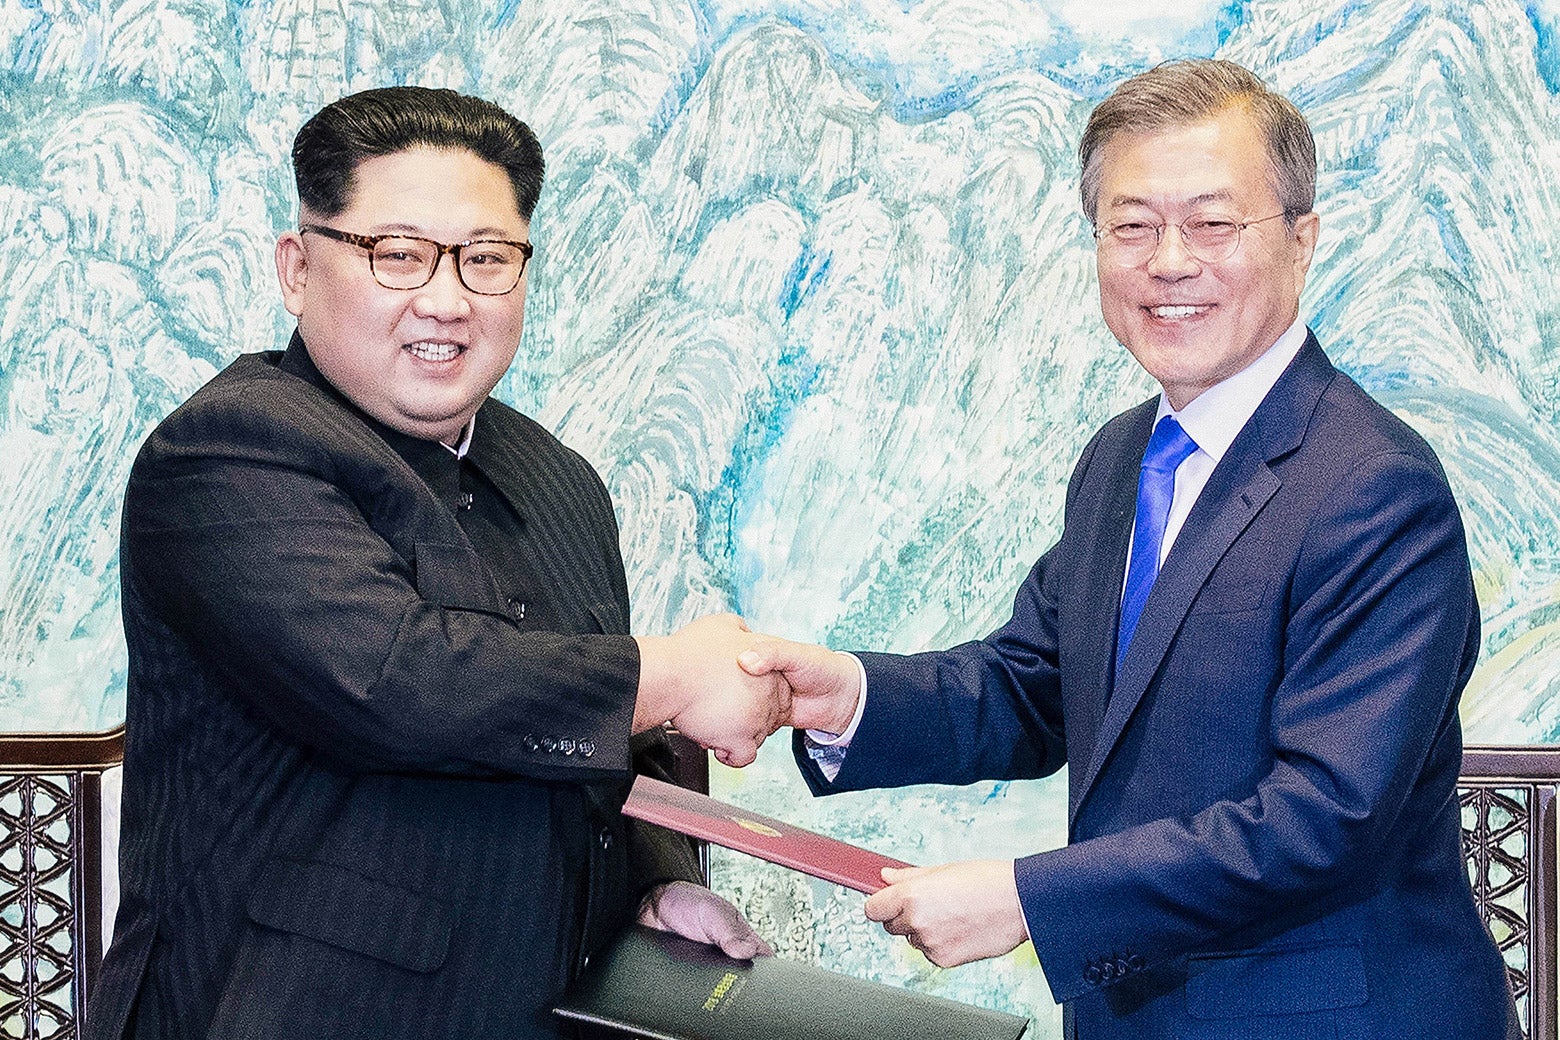 Kim Jong-un and Moon Jae-in shake hands.